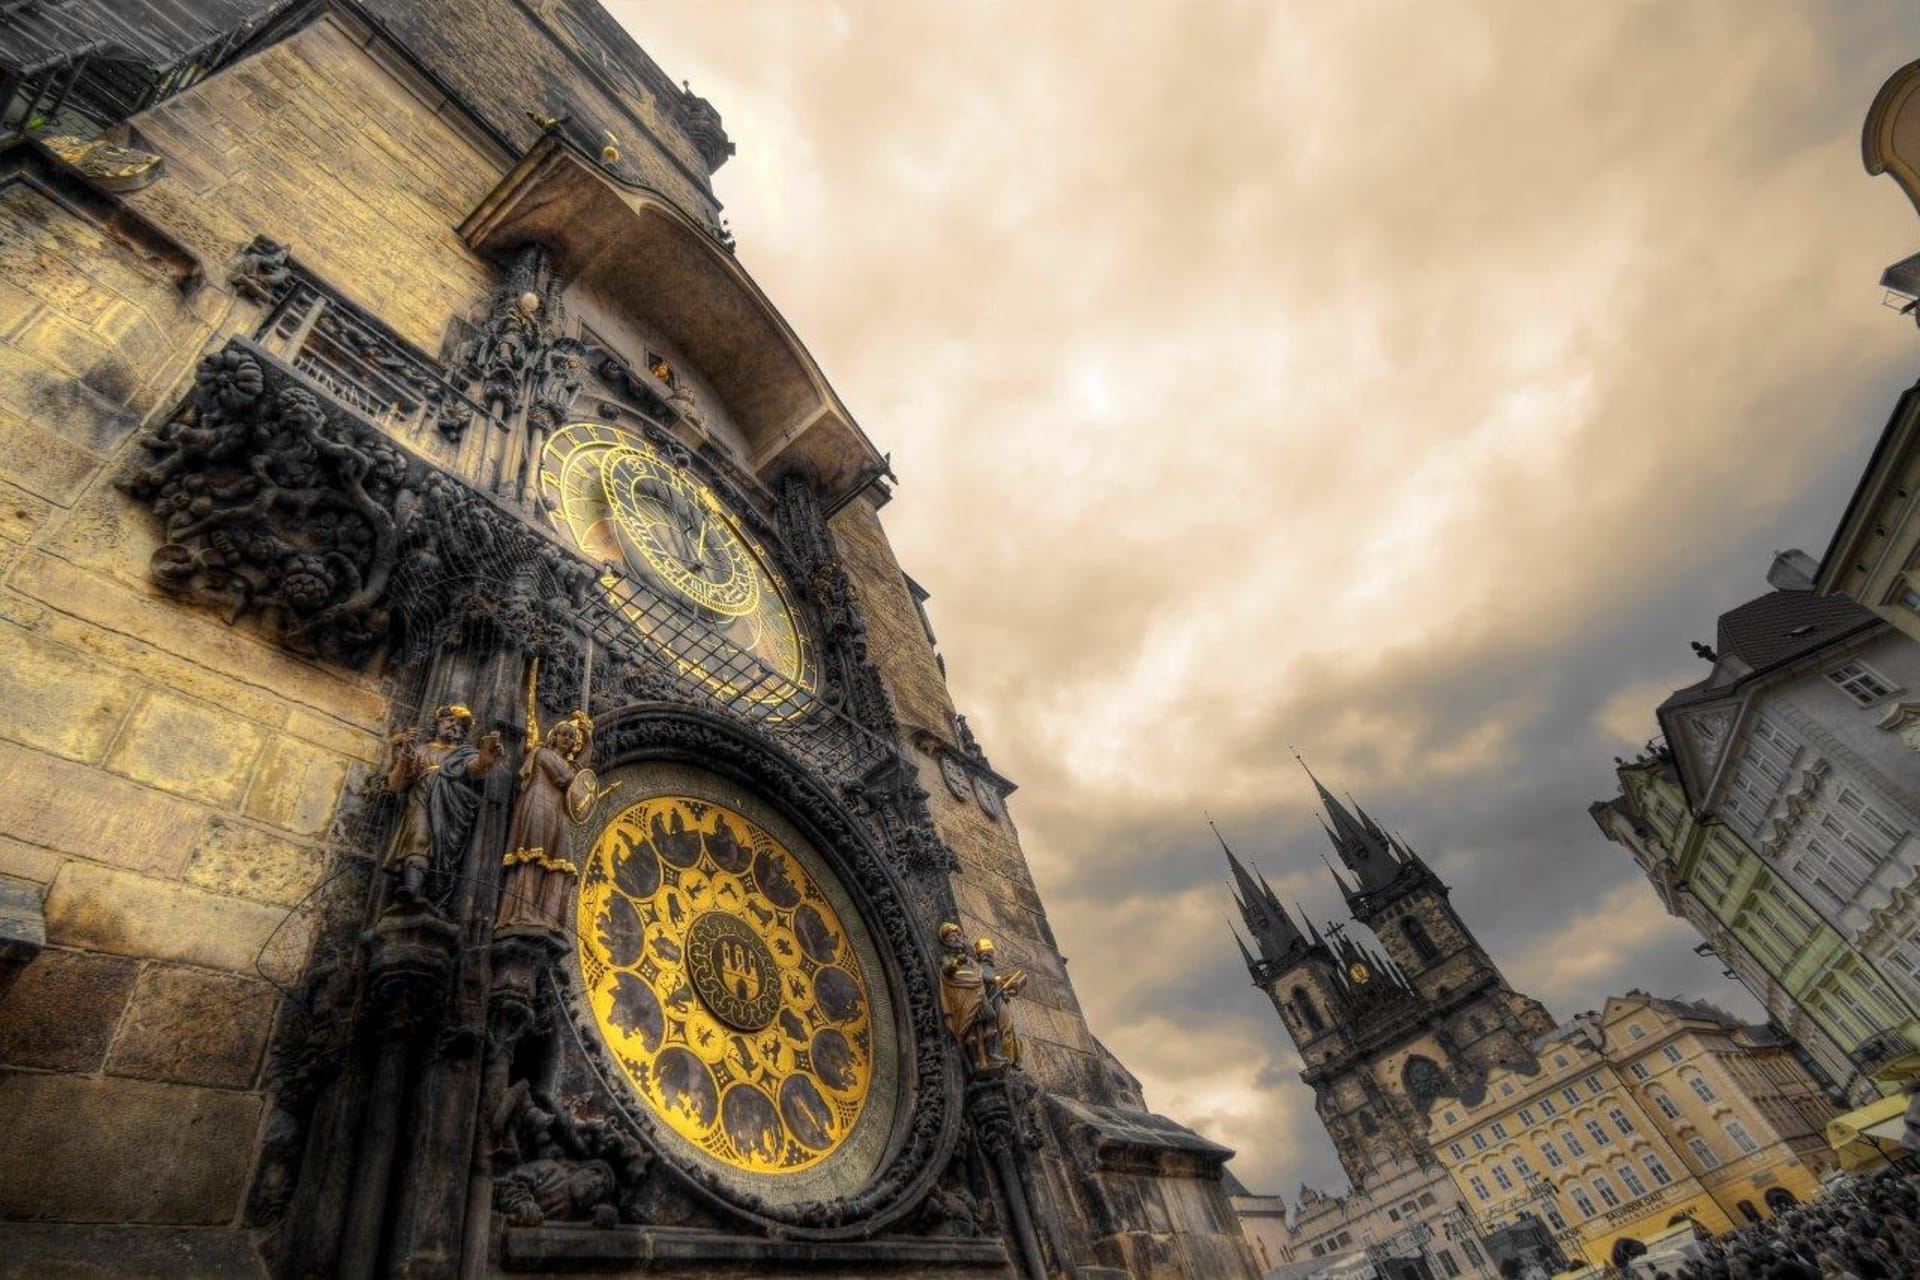 Orloj Praha